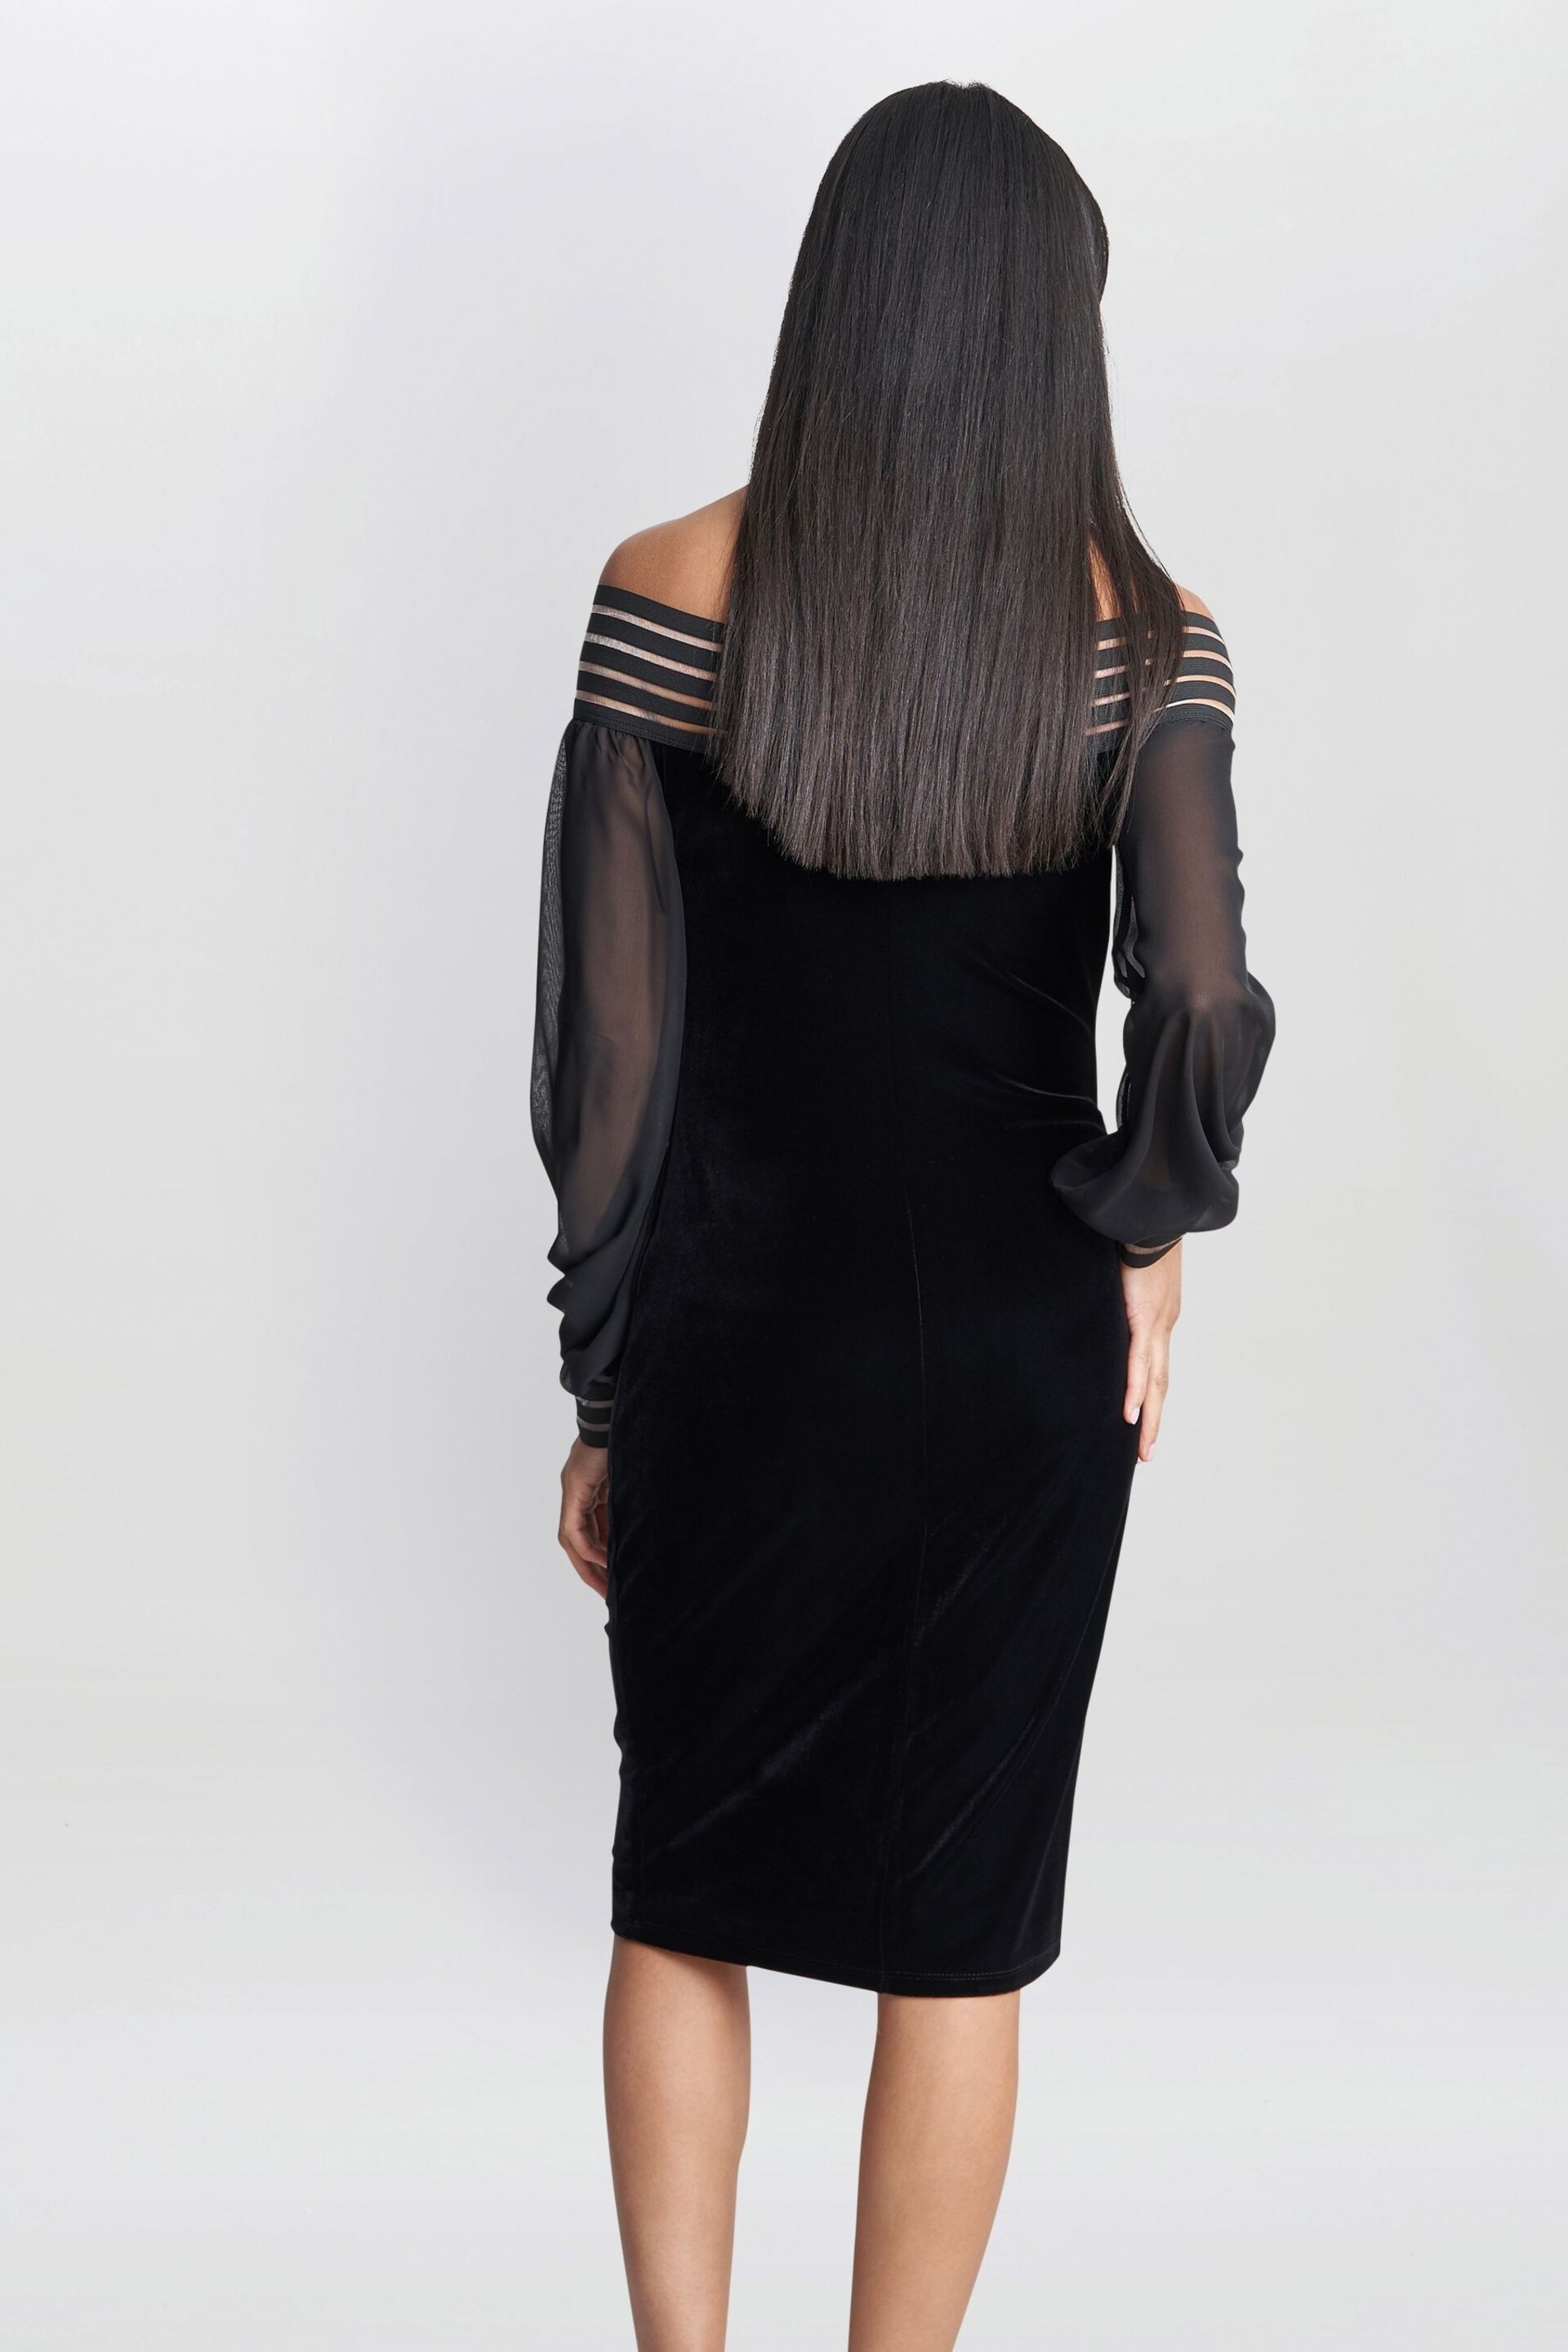 Gina Bacconi Taylor Velvet Off The Shoulder Black Dress - Image 2 of 5